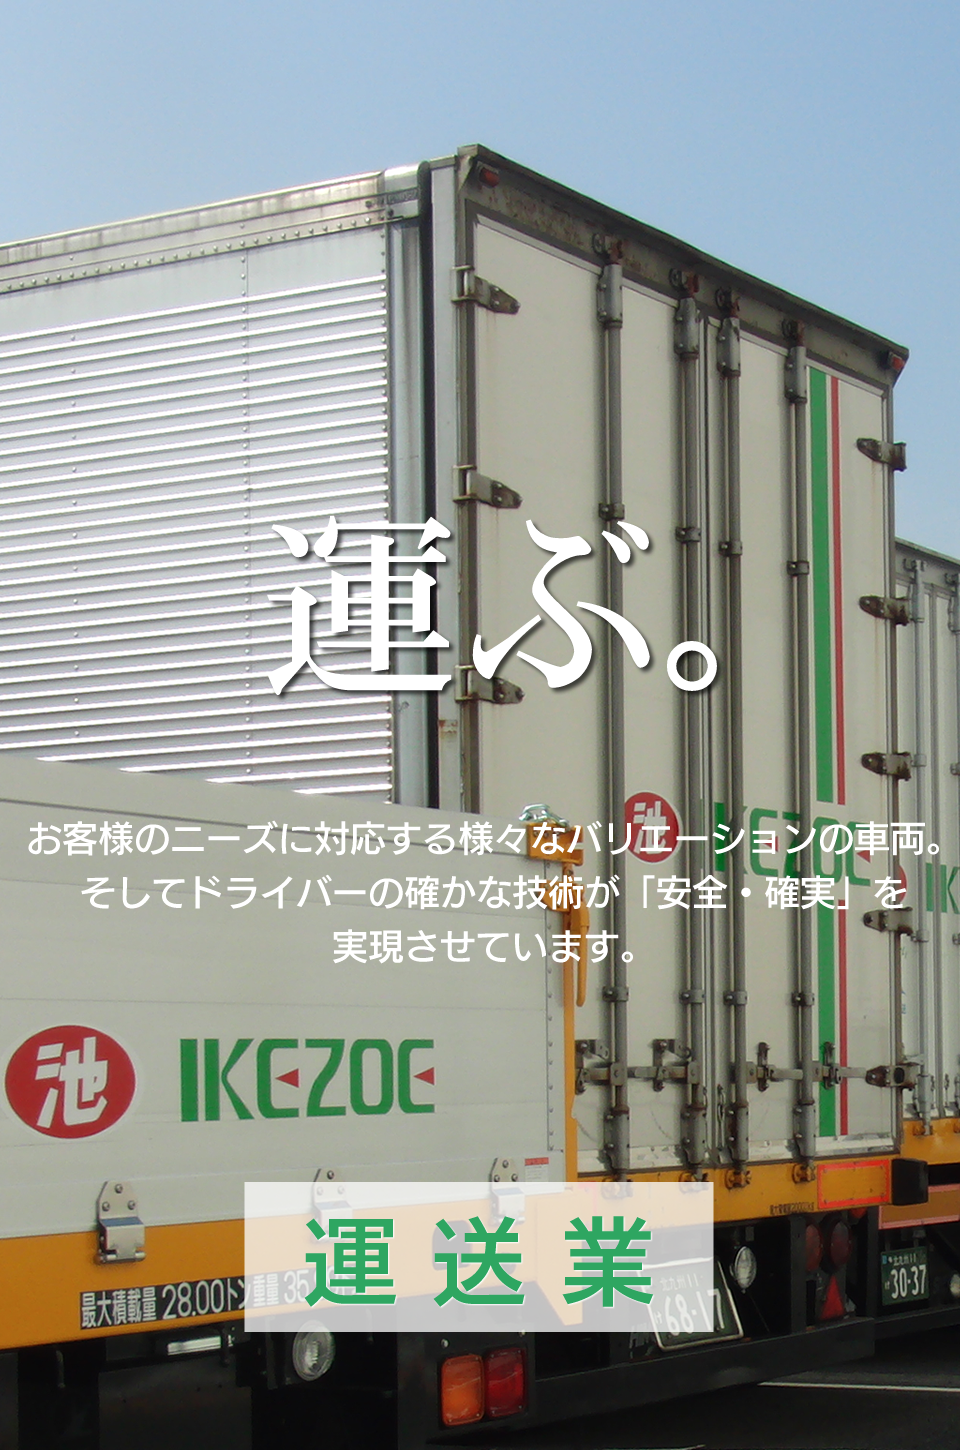 スマートフォン用の株式会社イケゾエ運送業の画像